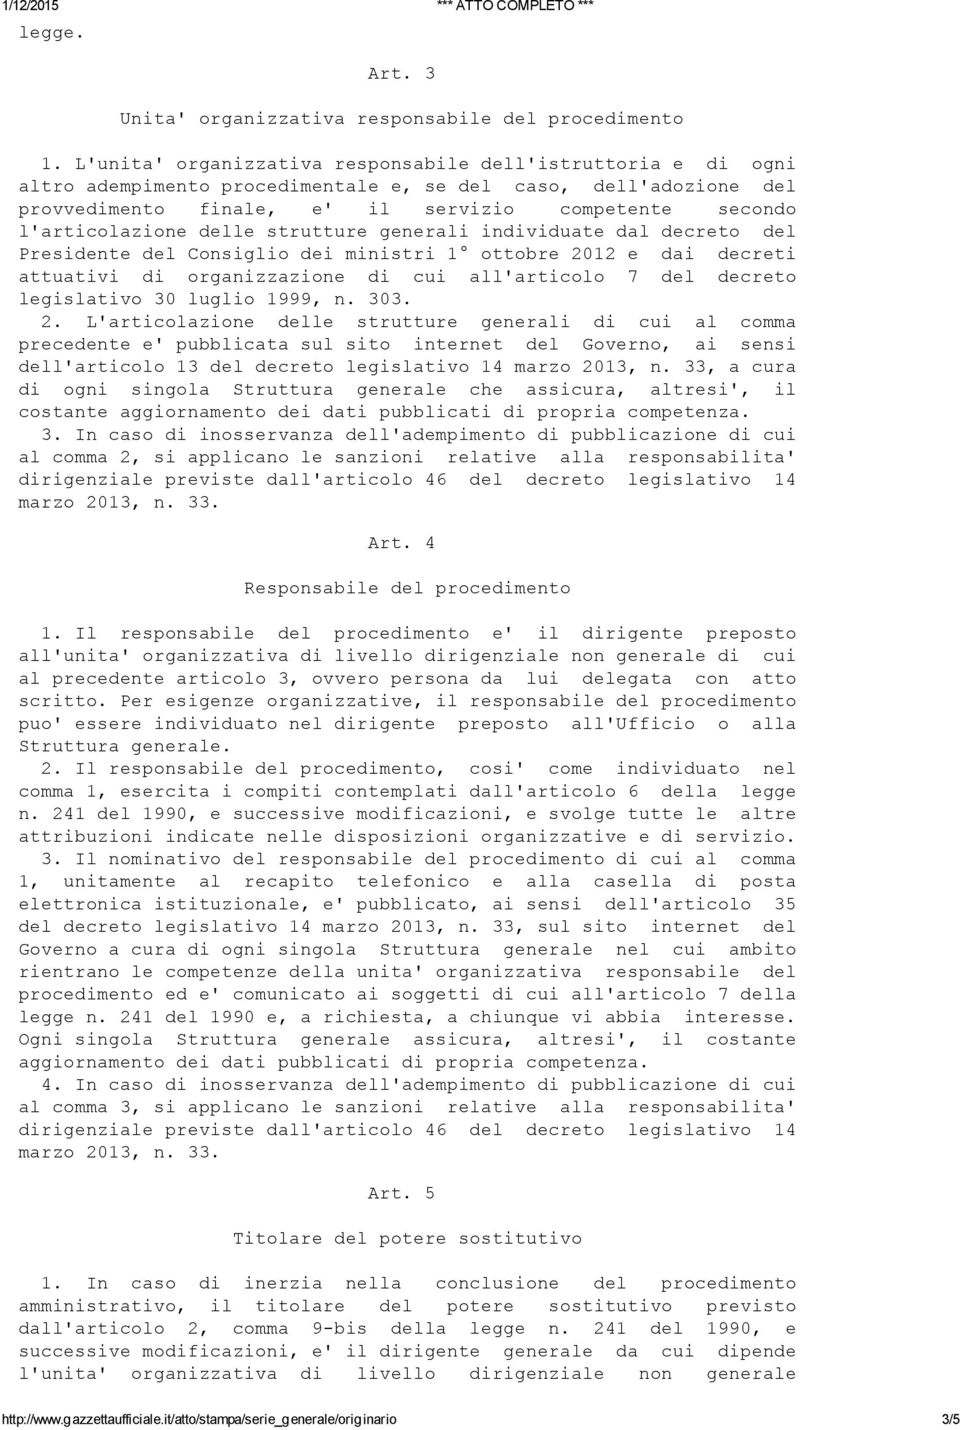 l'articolazione delle strutture generali individuate dal decreto del Presidente del Consiglio dei ministri 1 ottobre 2012 e dai decreti attuativi di organizzazione di cui all'articolo 7 del decreto